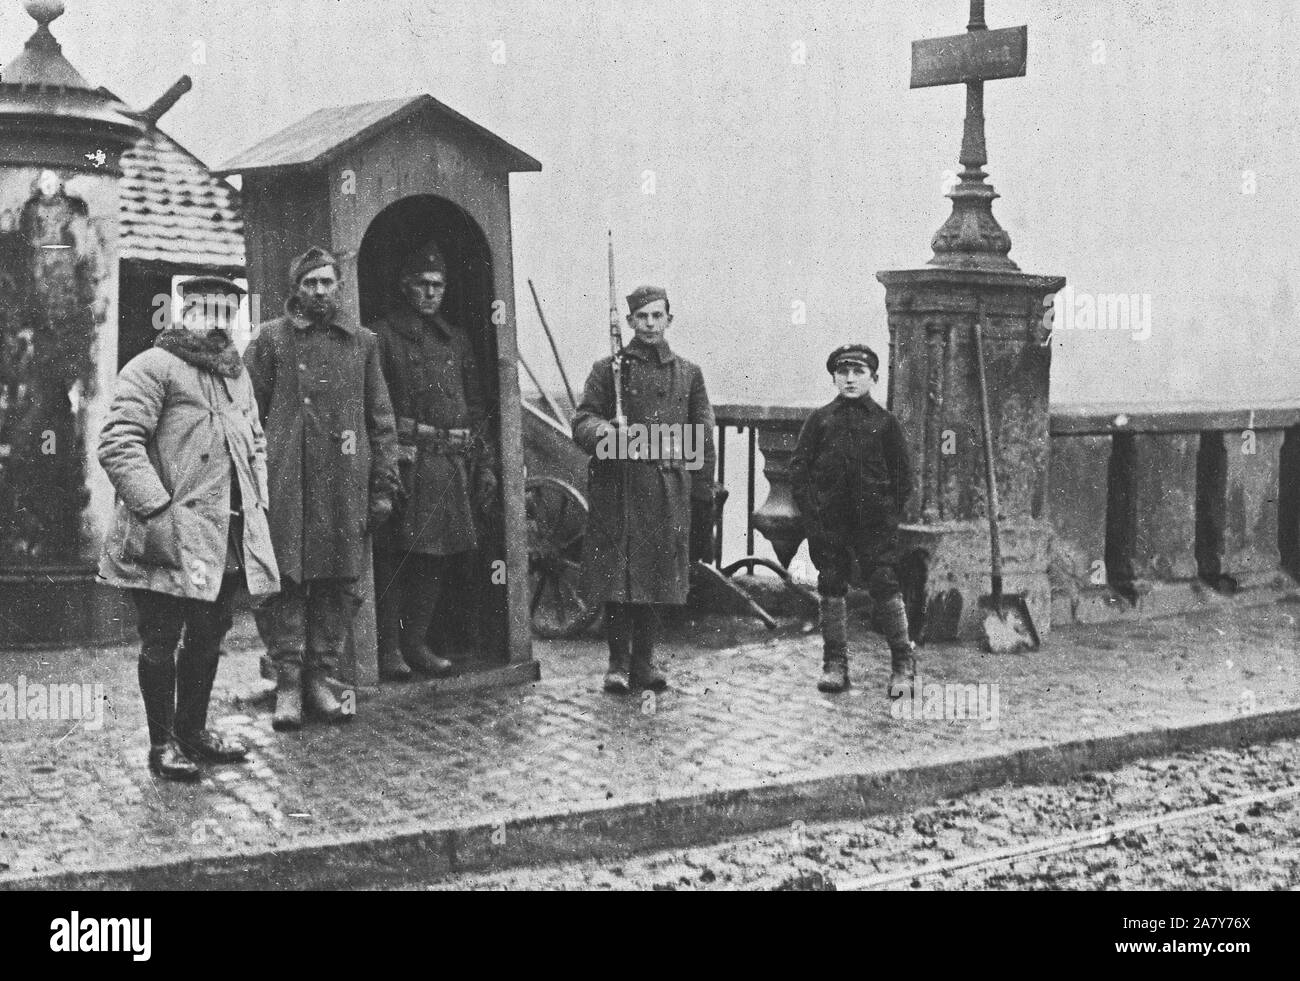 1919 - der Besatzungsarmee - Amerikaner guarding Brücke in Trier. Amerikanische Wachen des Yankee der Besatzungsarmee auf der Hut auf einer Brücke in Trier, Deutschland Stockfoto